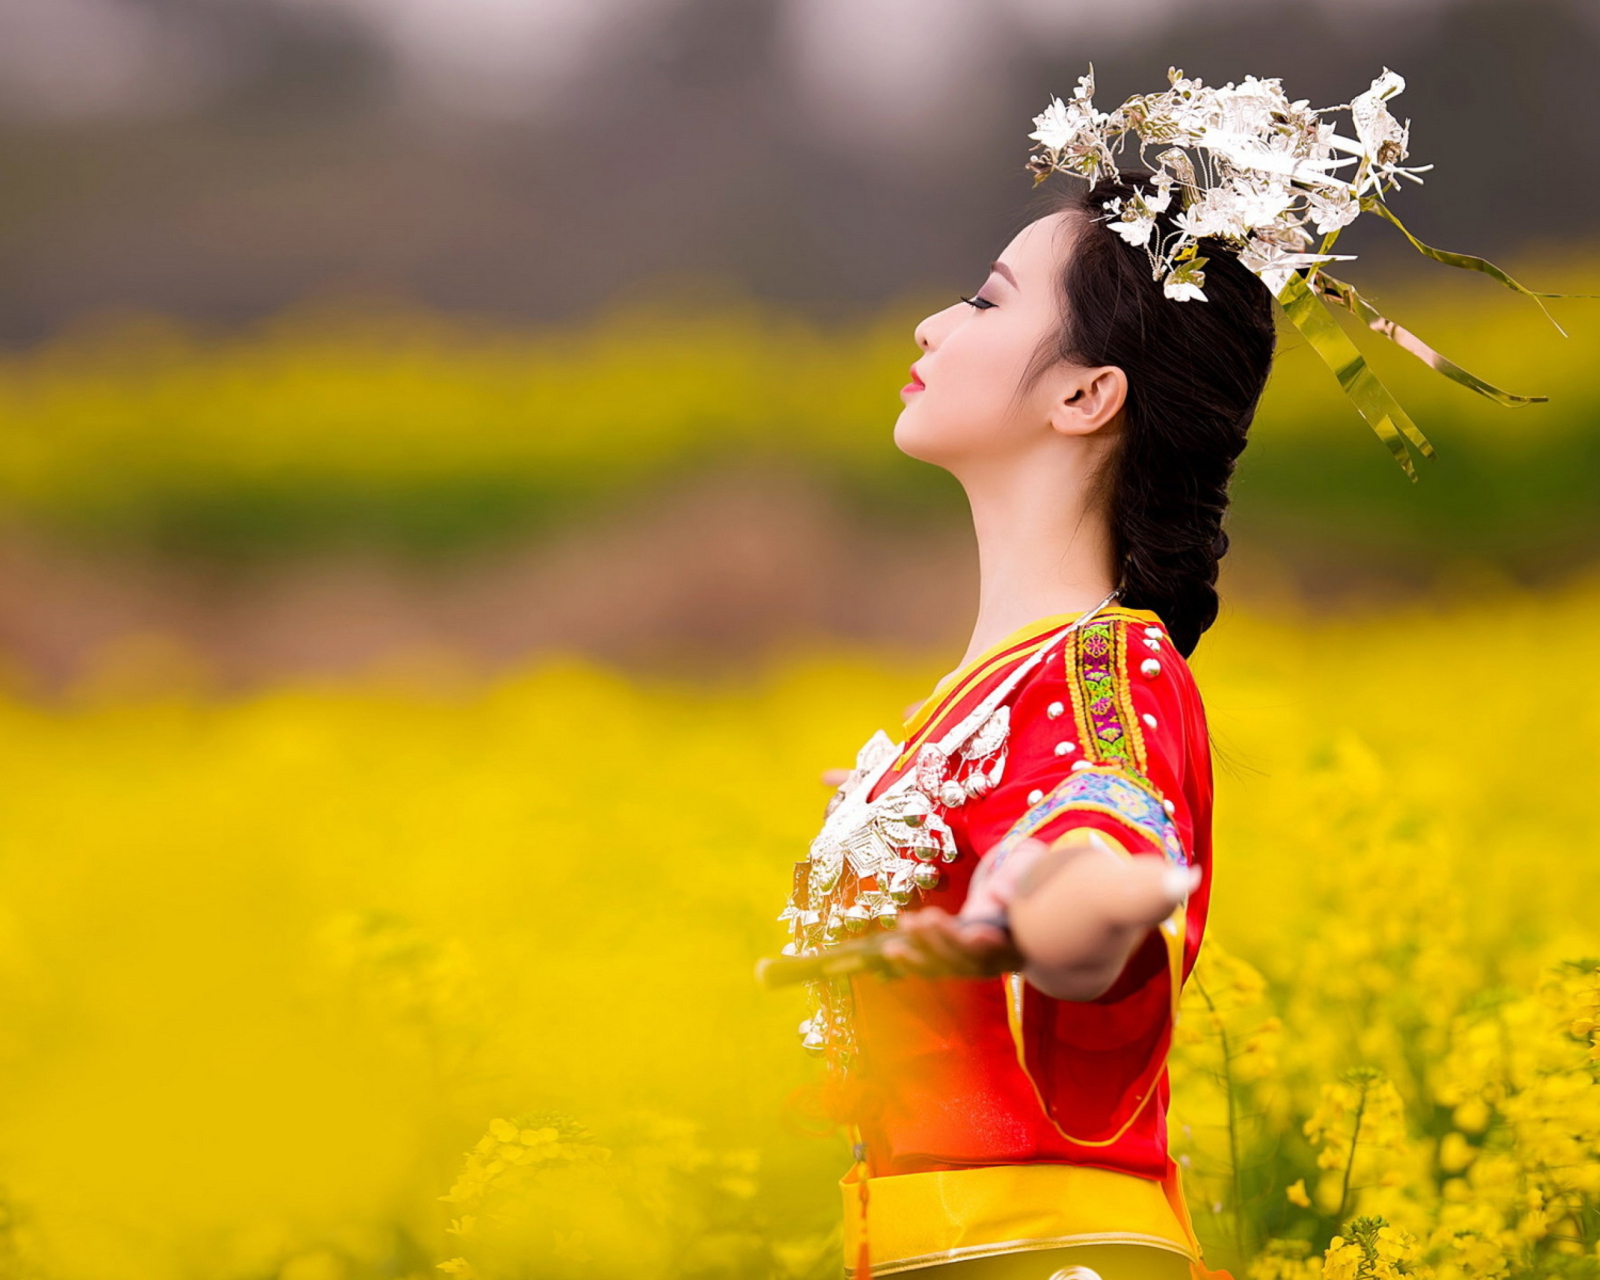 Обои Asian Girl In Yellow Flower Field 1600x1280